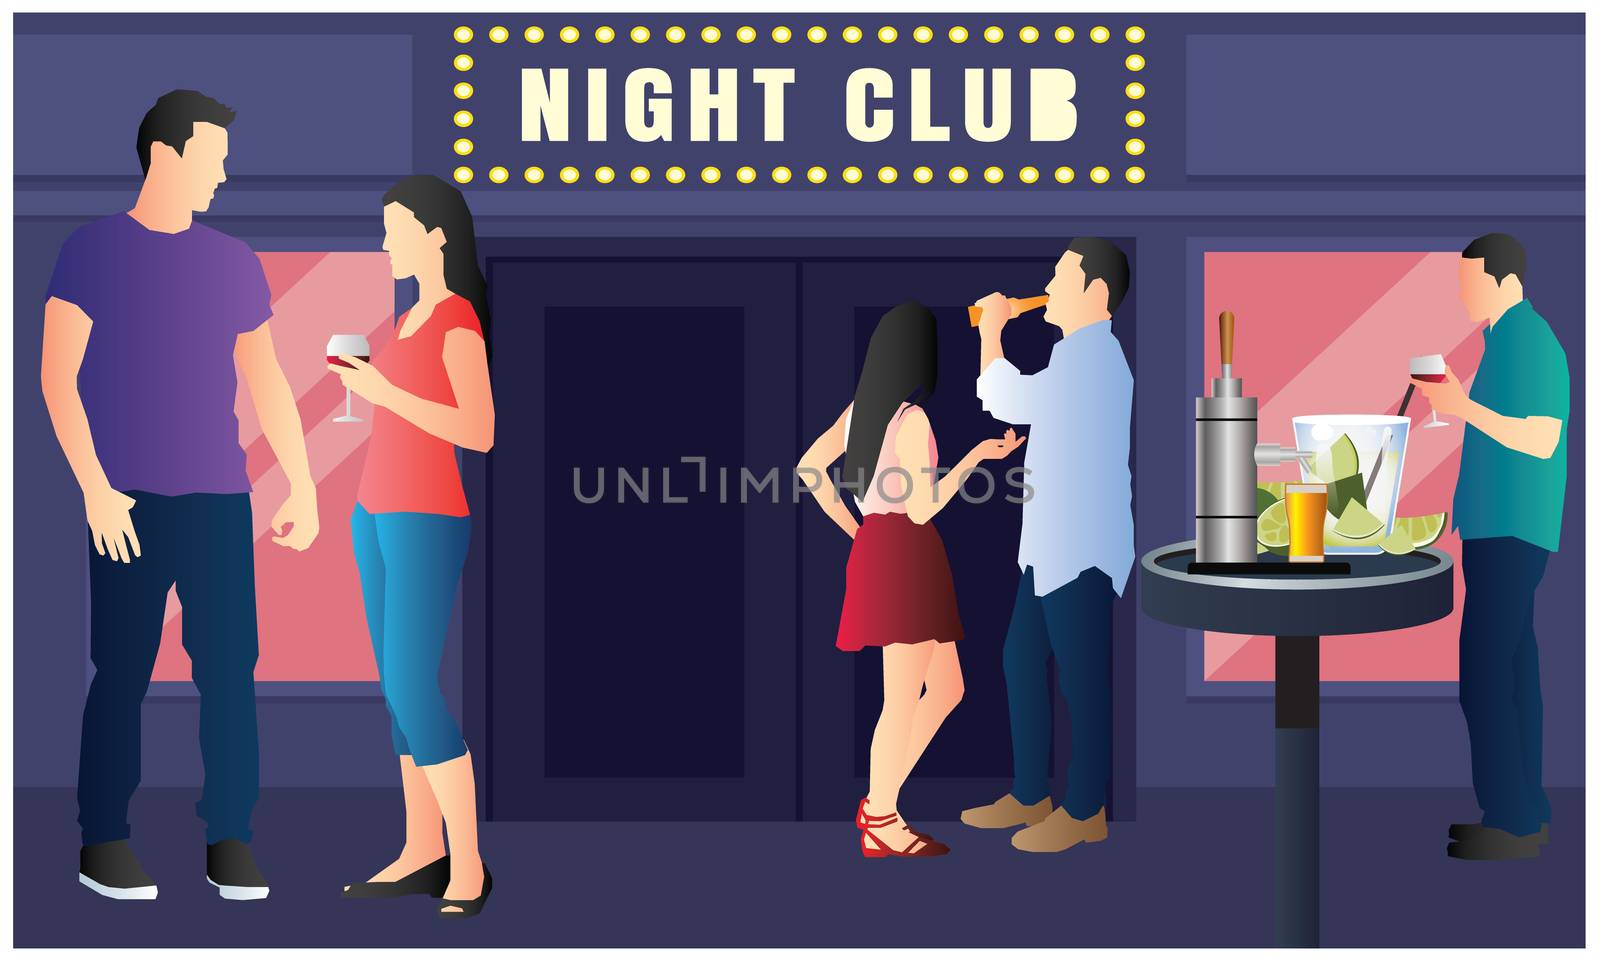 Print people are enjoy and dancing in night club by aanavcreationsplus